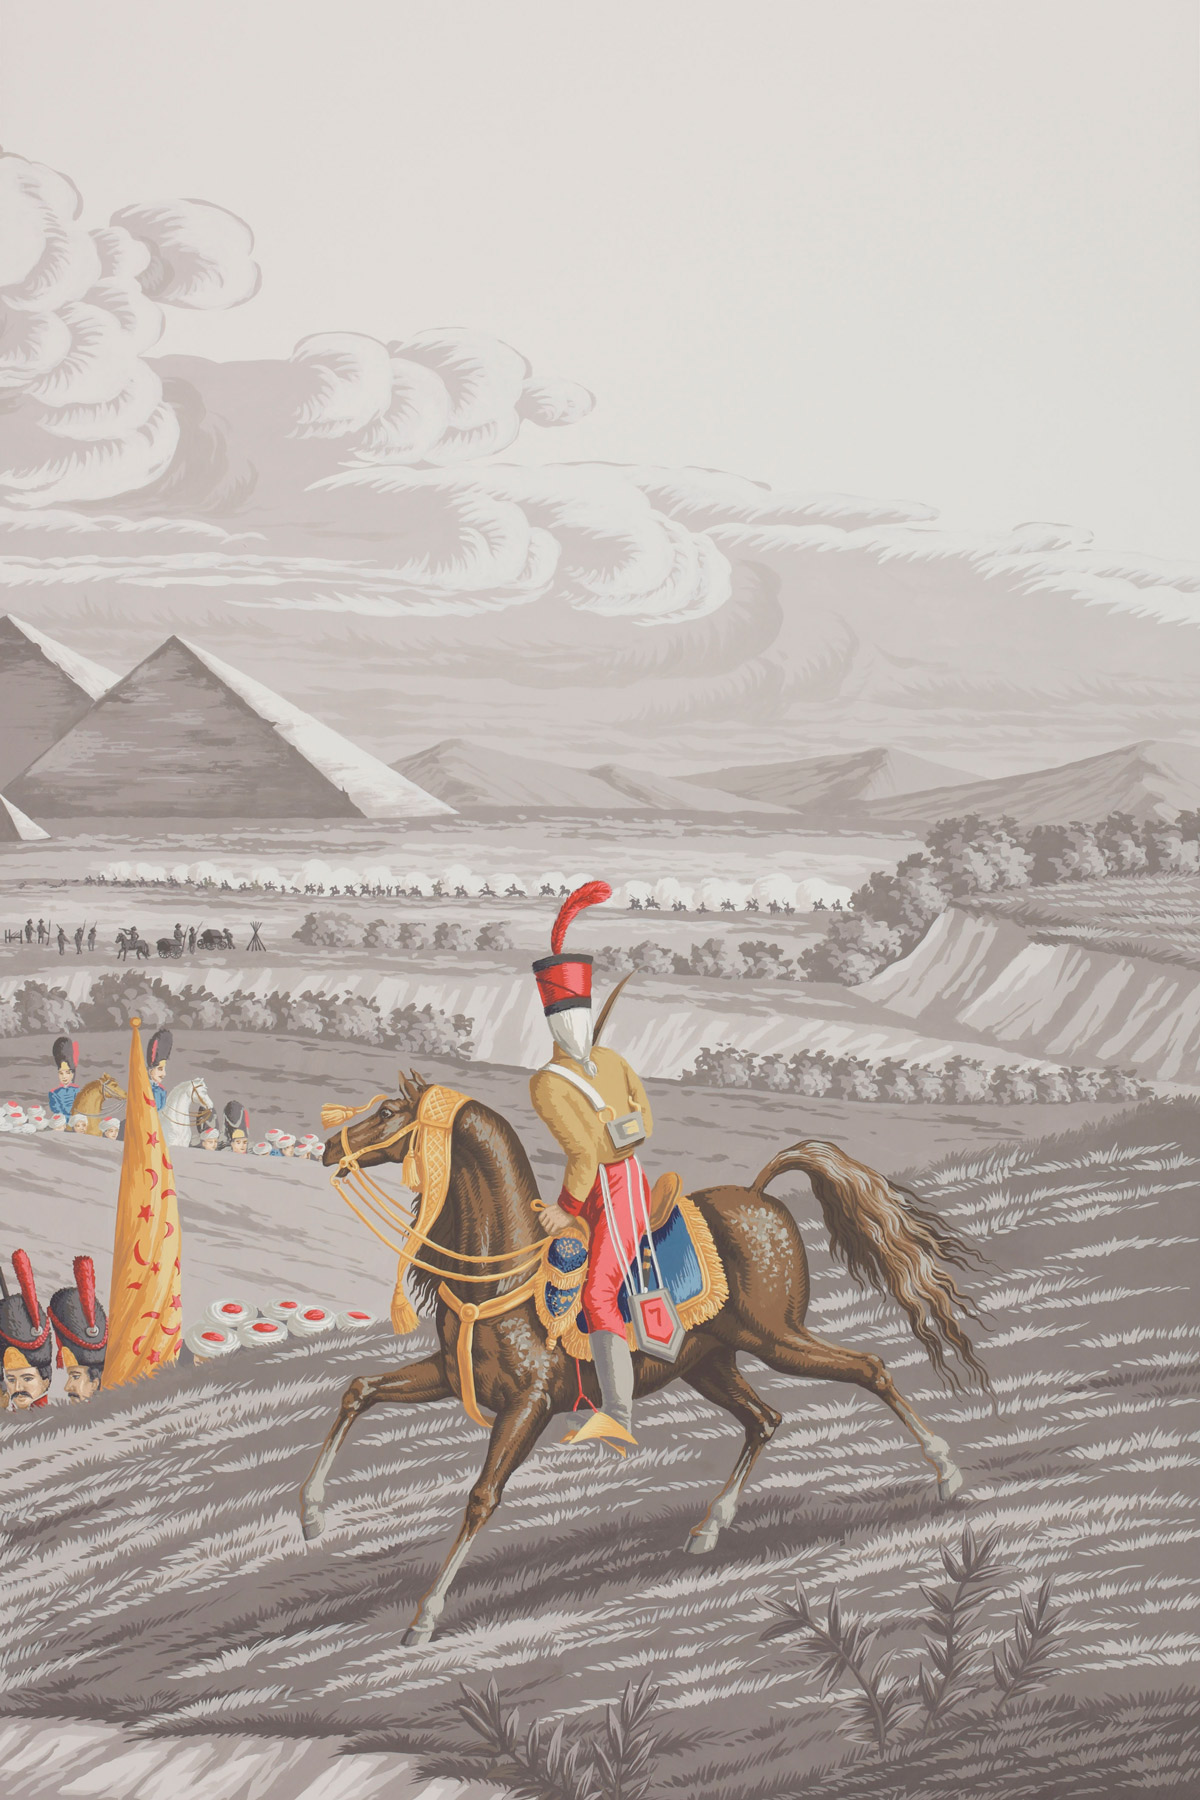 Napoleon's Campaign in Egypt